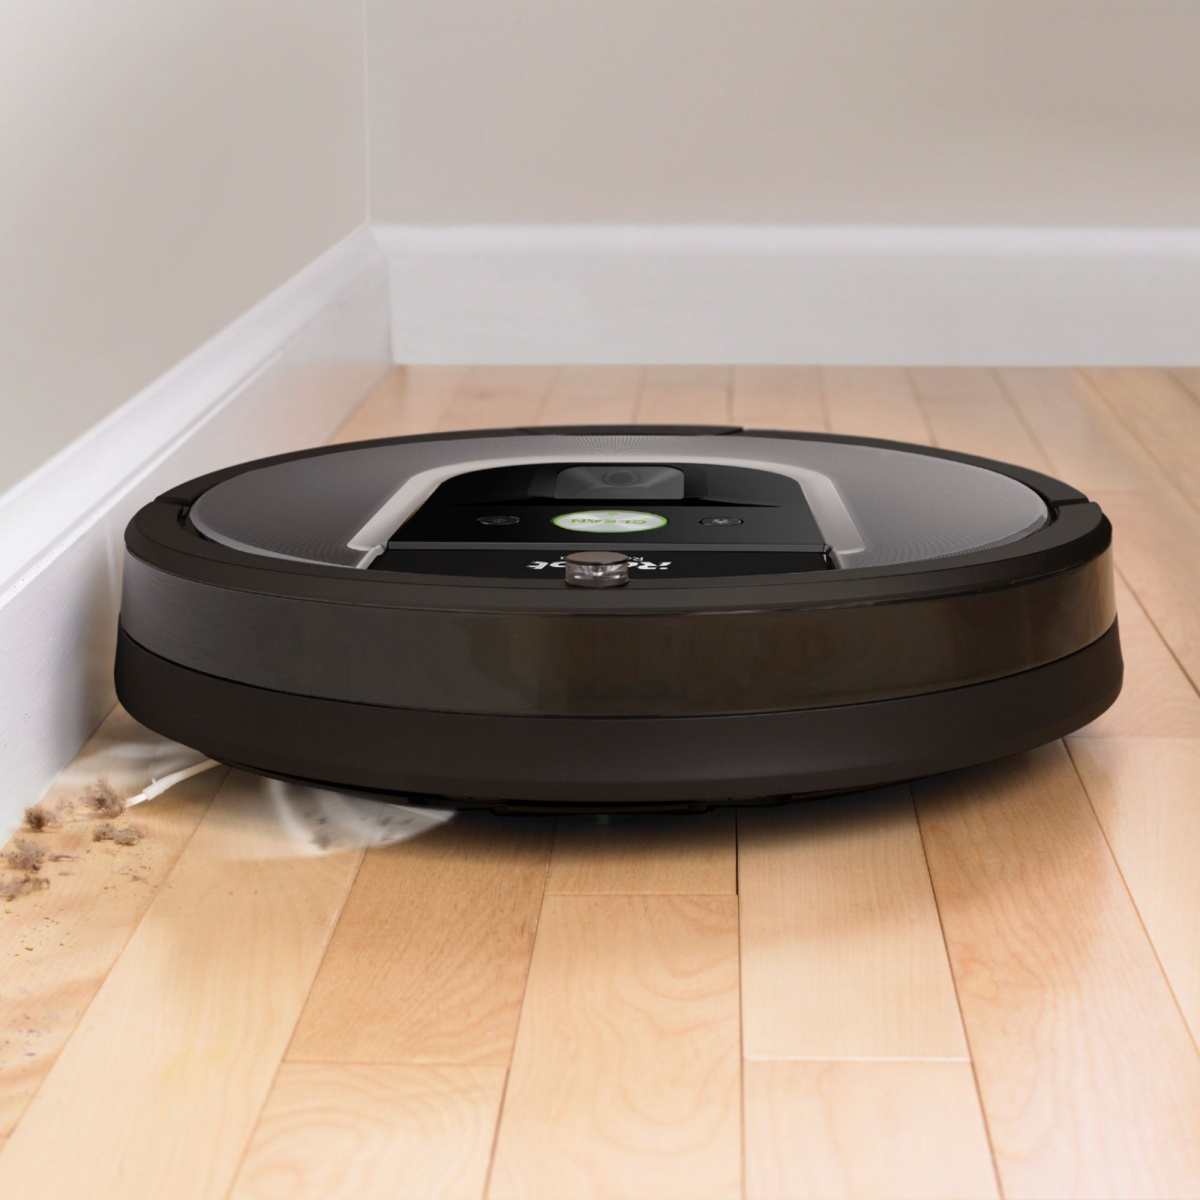 Top 5 Best Robot Vacuum Cleaner Deals, Which Irobot Is Best For Hardwood Floors